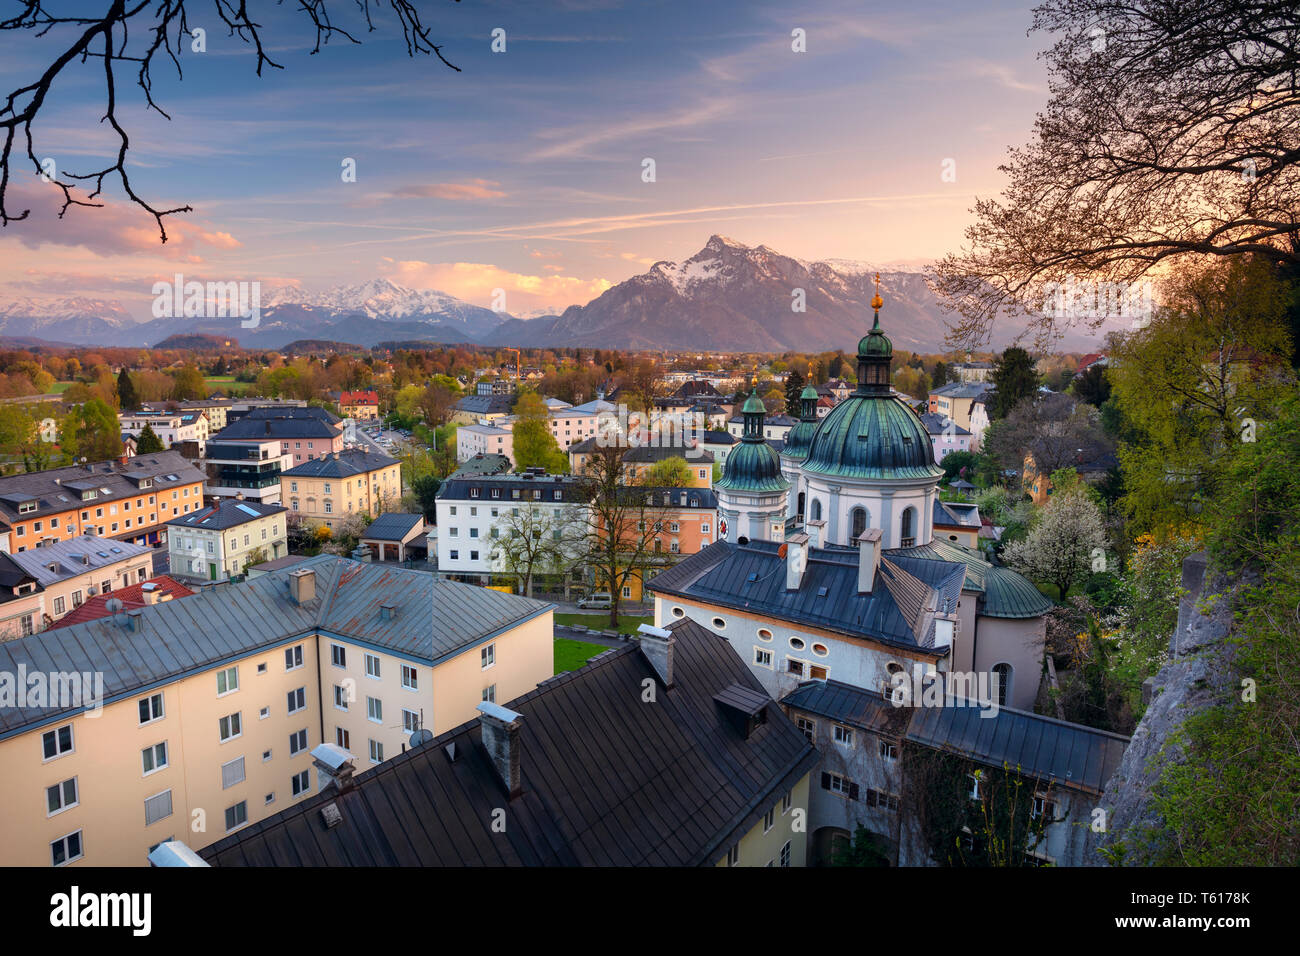 Salzburg, Autriche. Image de la ville de Salzbourg, Autriche au coucher du soleil de printemps. Banque D'Images